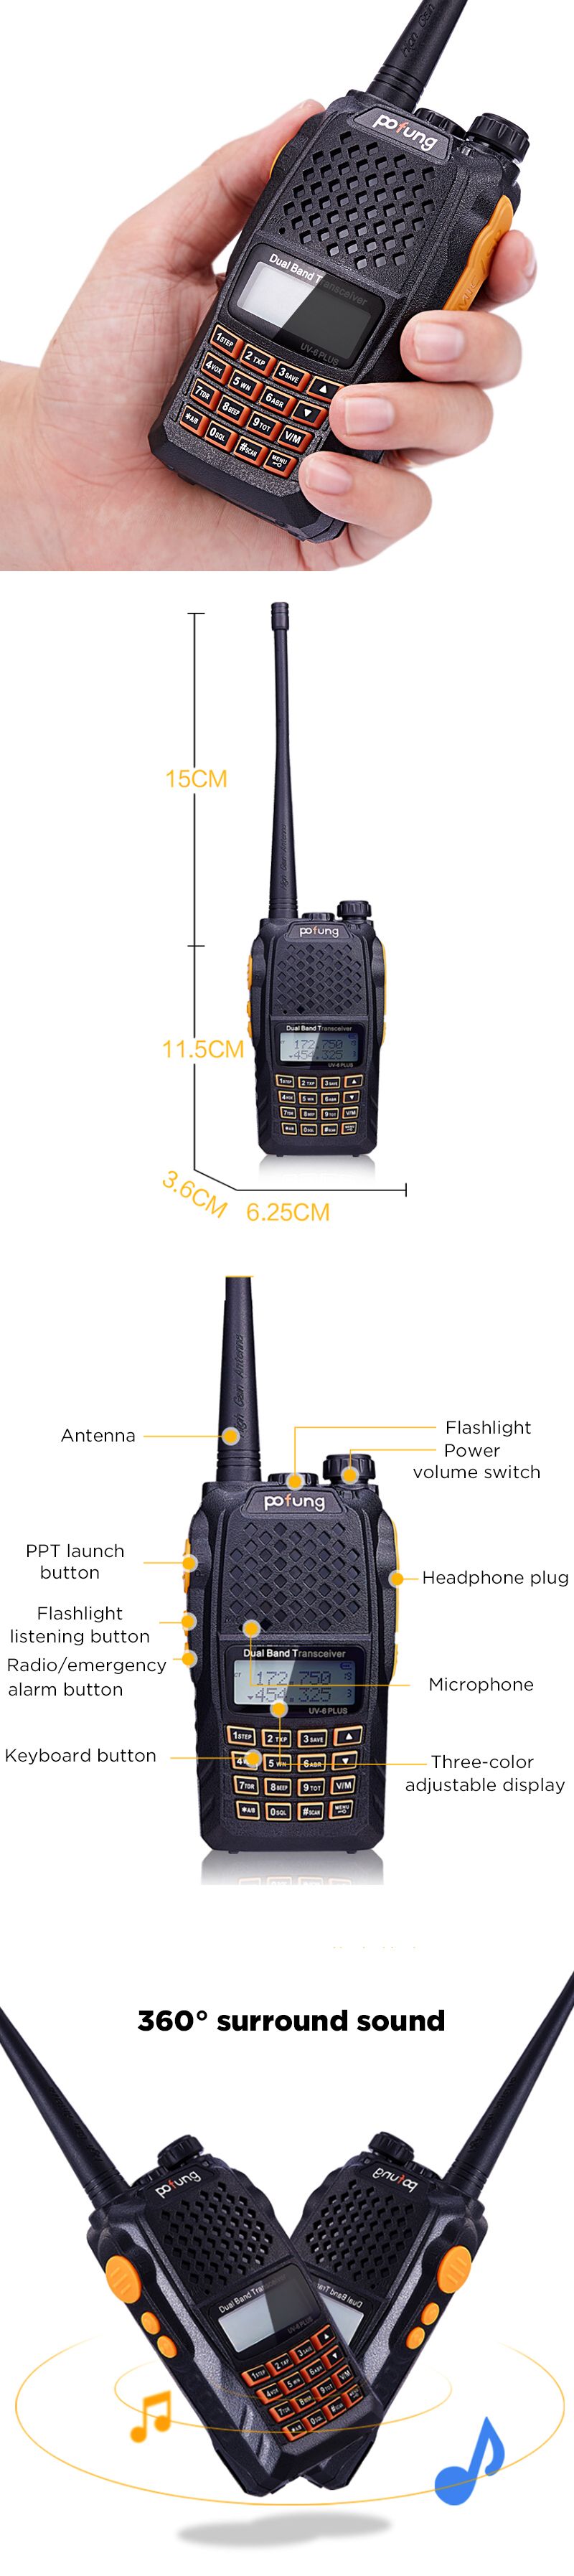 BAOFENG-UV-6-PLUS-400-520MHz-128-Channels-74V-Dual-Band-Radio-Handheld-Walkie-Talkie-Flashlight-Chin-1571996